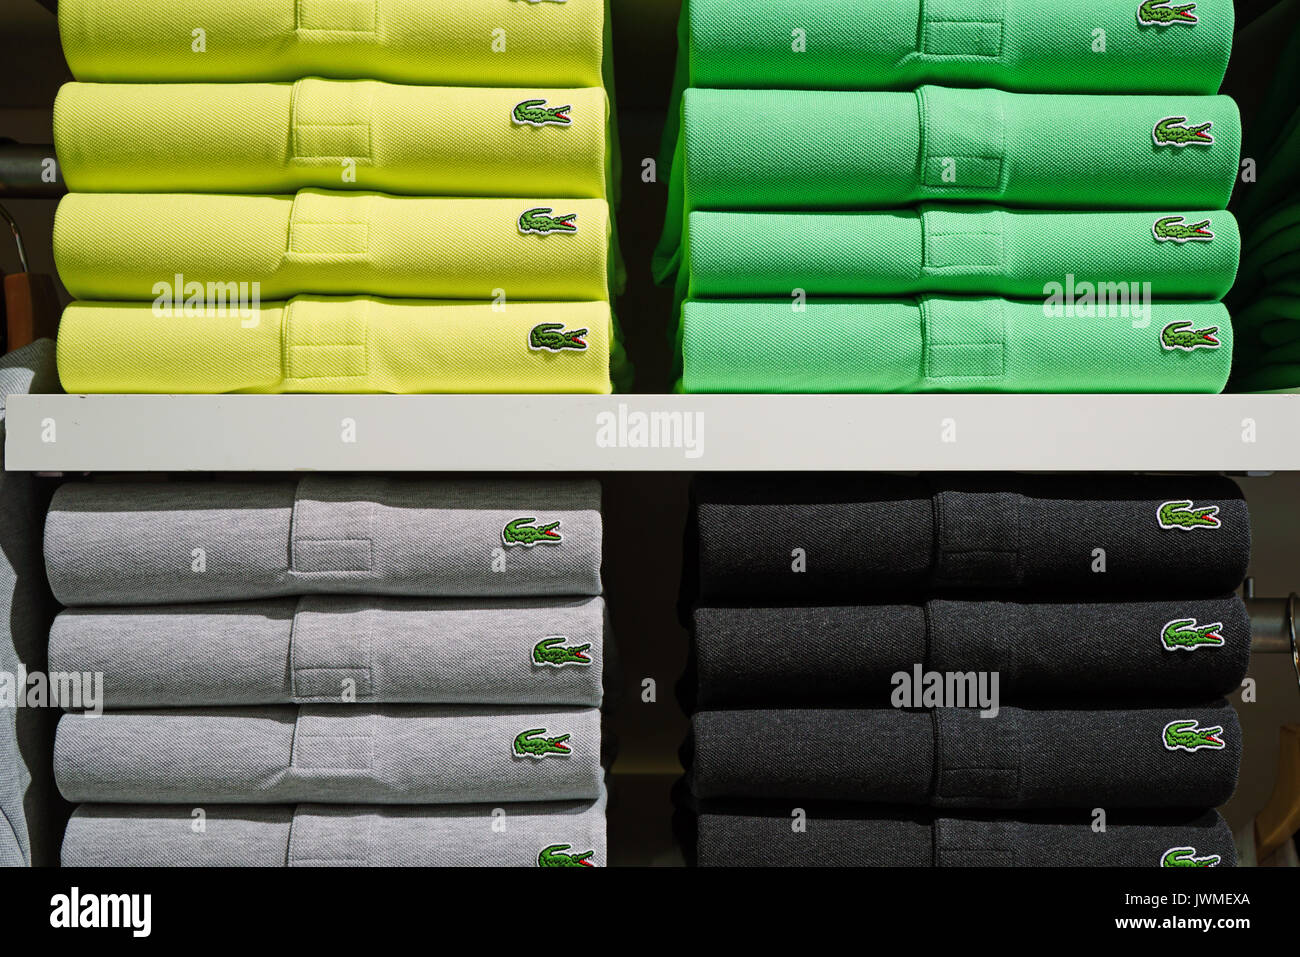 Pile di coloratissimi Lacoste magliette polo sugli scaffali del negozio. Lacoste è un abbigliamento francese azienda famosa per i suoi campi da tennis magliette. Foto Stock